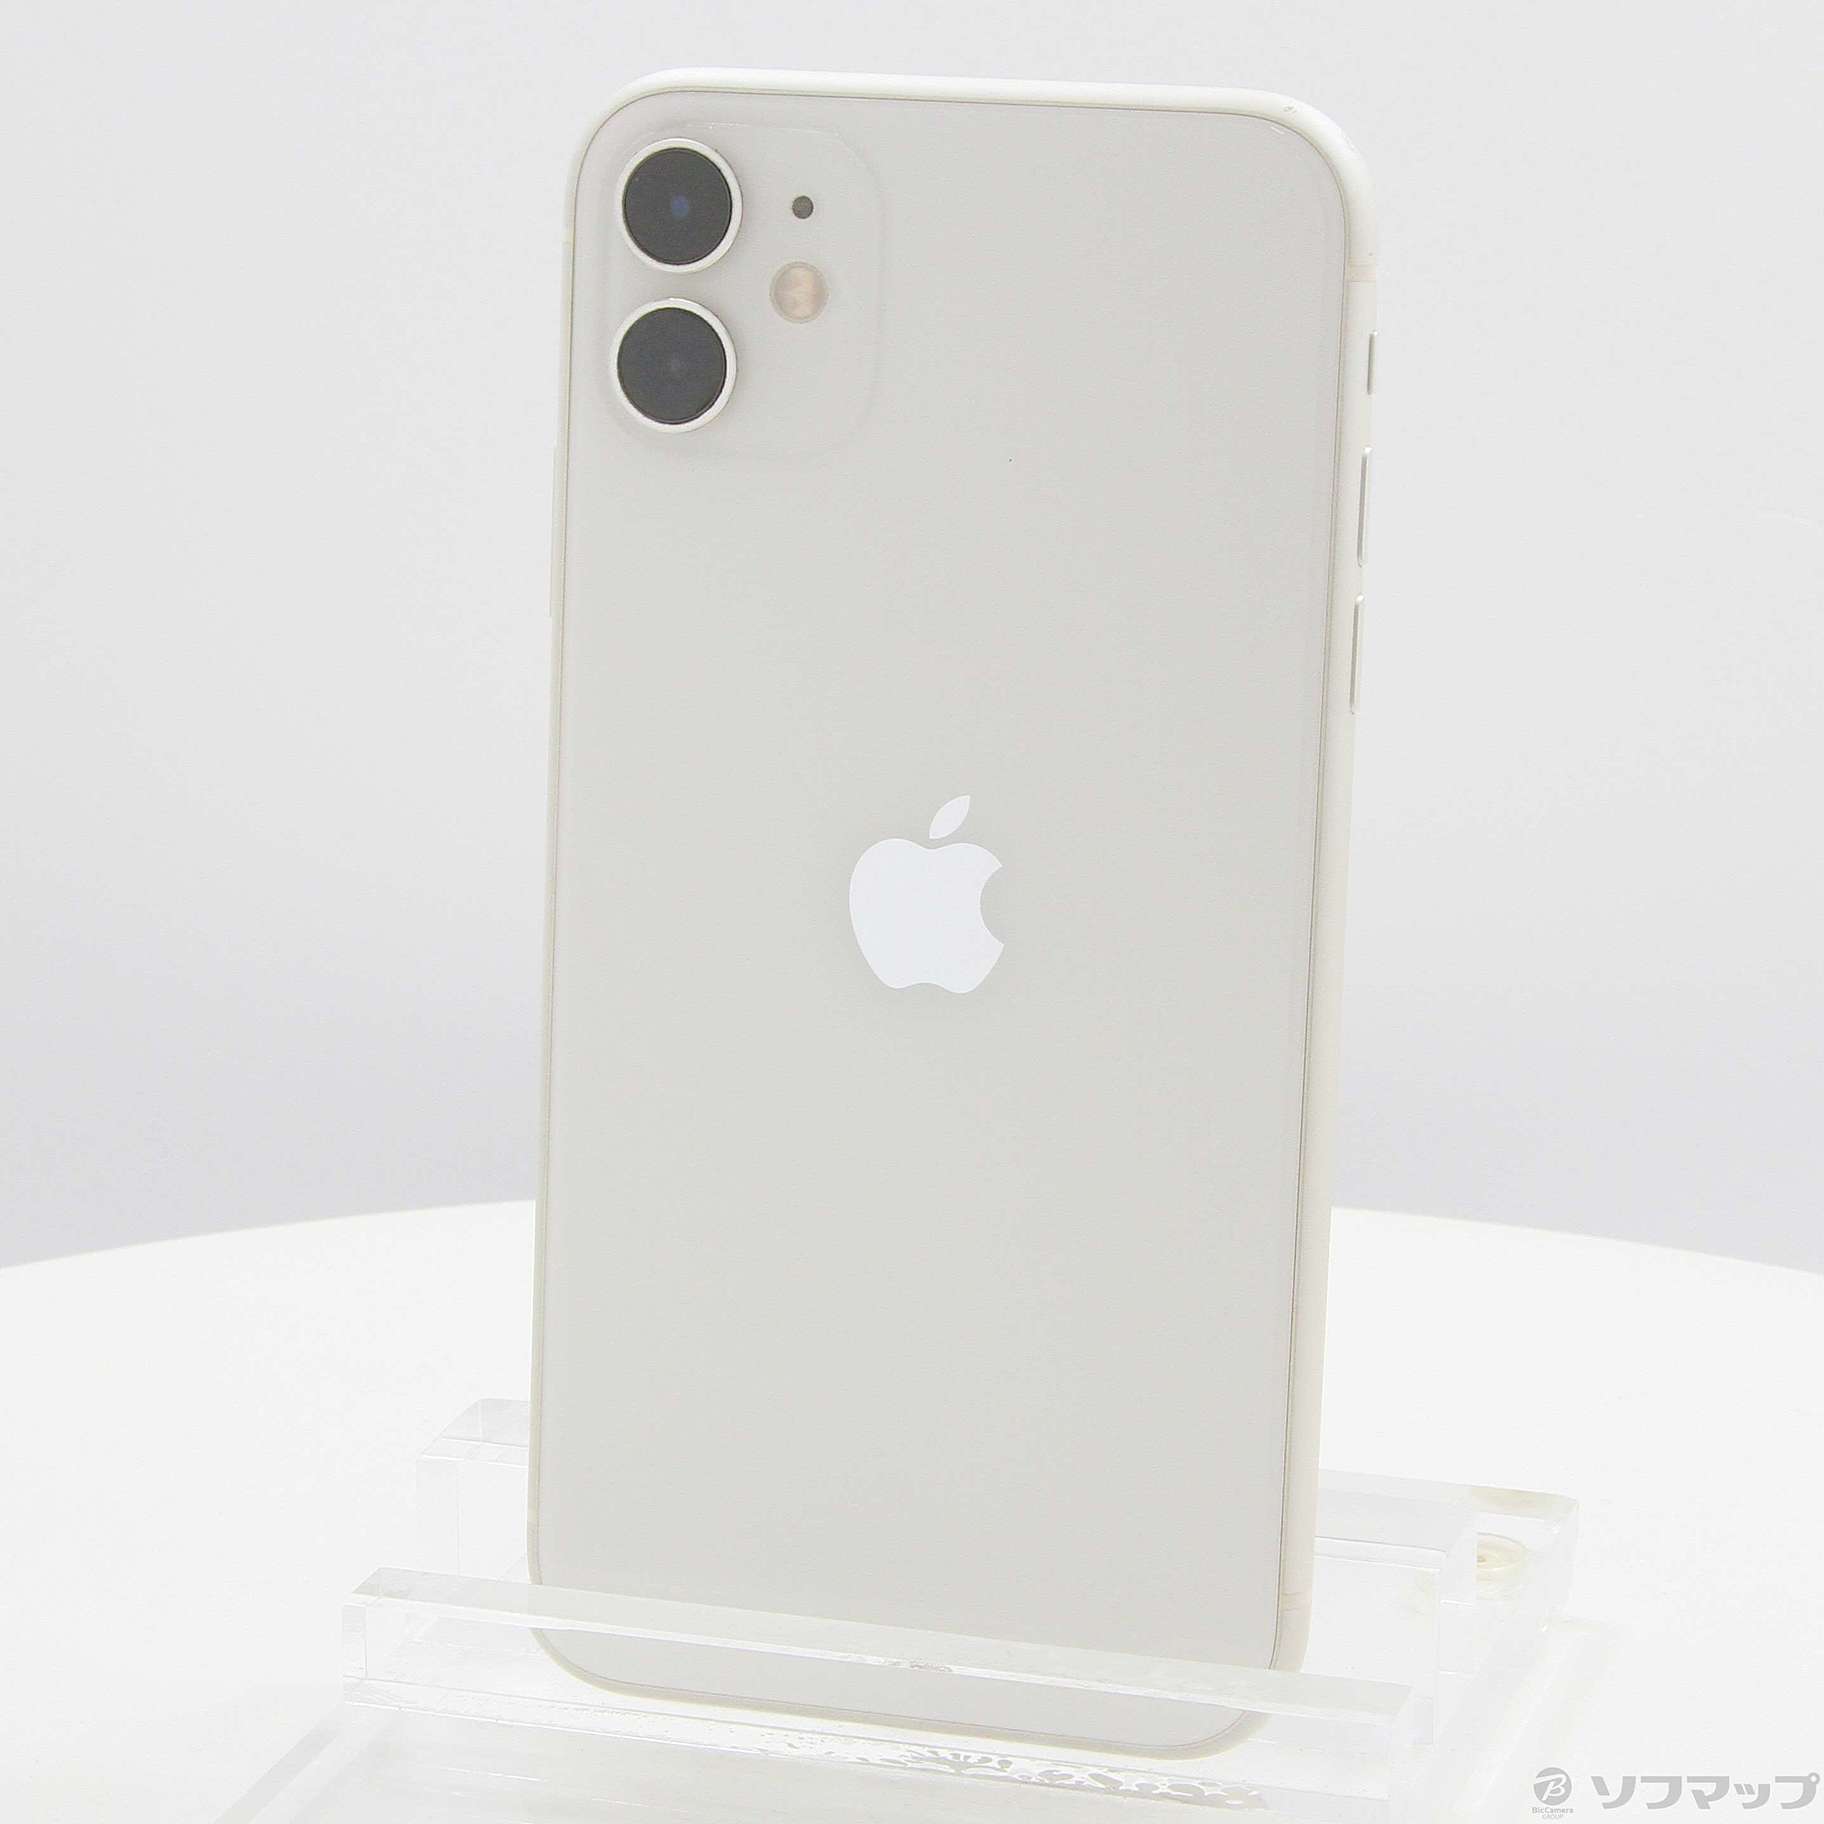 【新品未開封】iPhone11 White SIMフリー